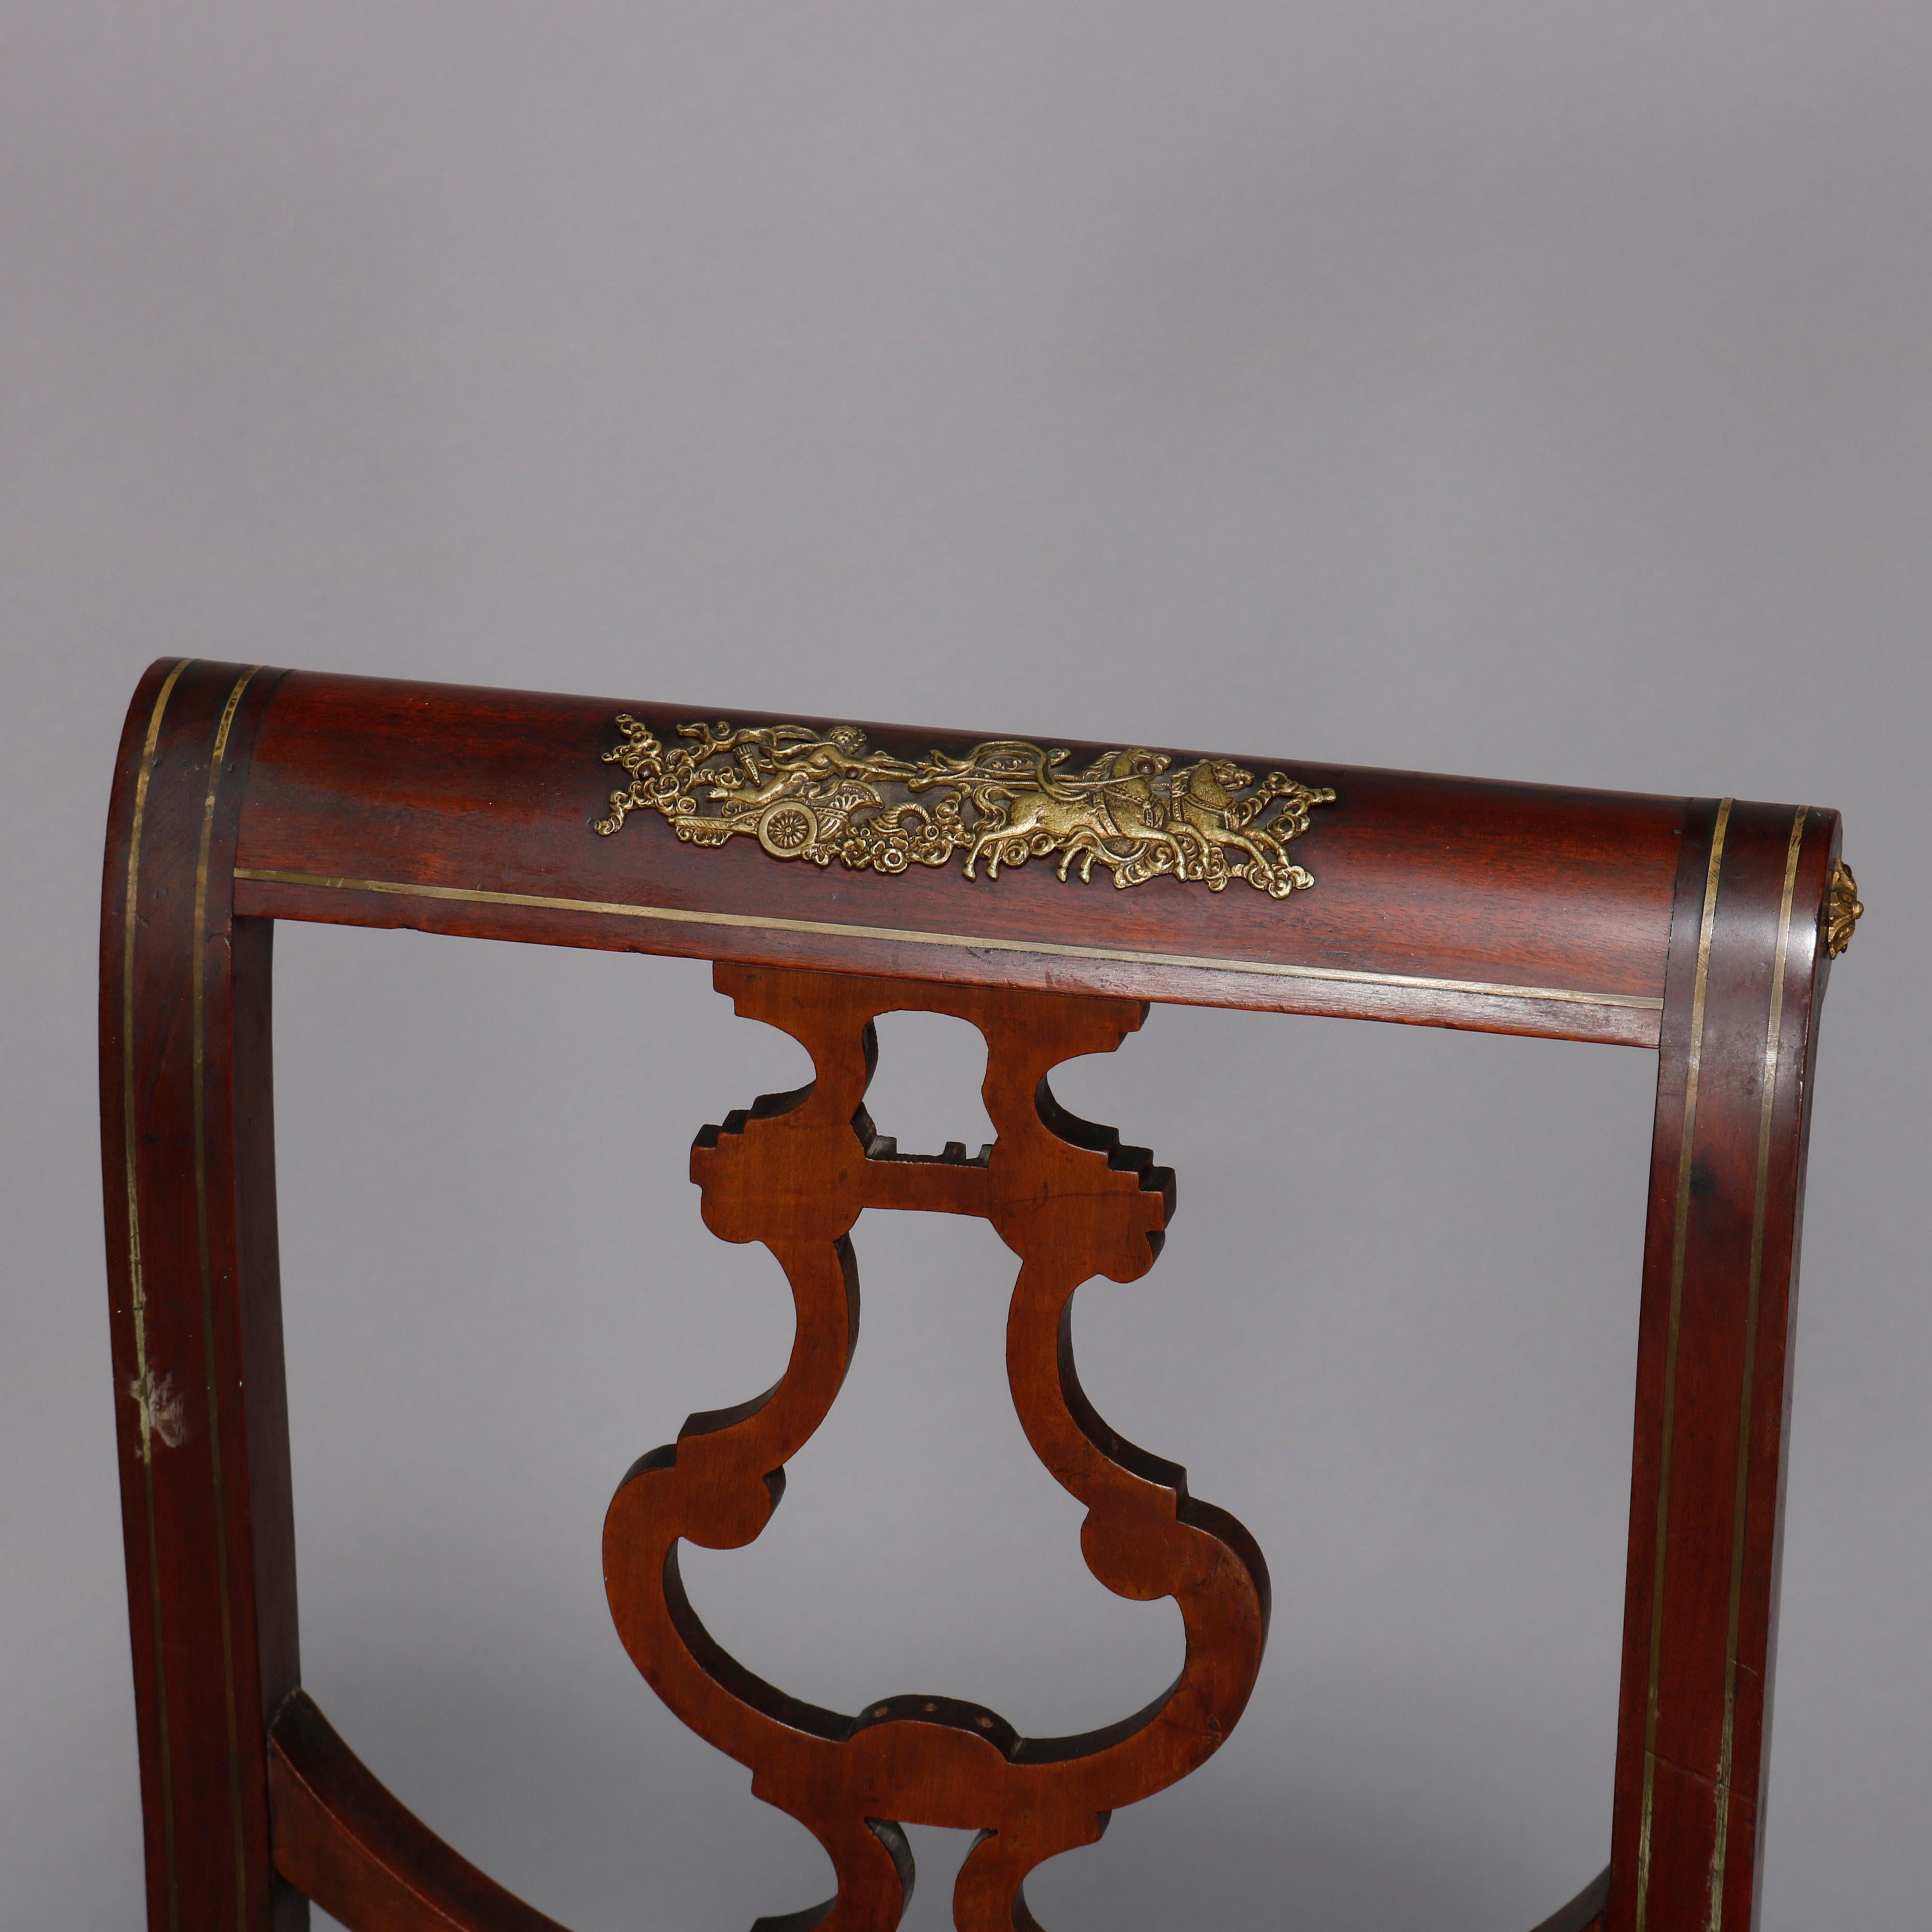 Chaise d'appoint Empire française ancienne, en acajou, avec dossier en forme d'urne stylisée et montures en bronze doré à motifs de feuillages, 19e siècle.

Dimensions - 35,75 